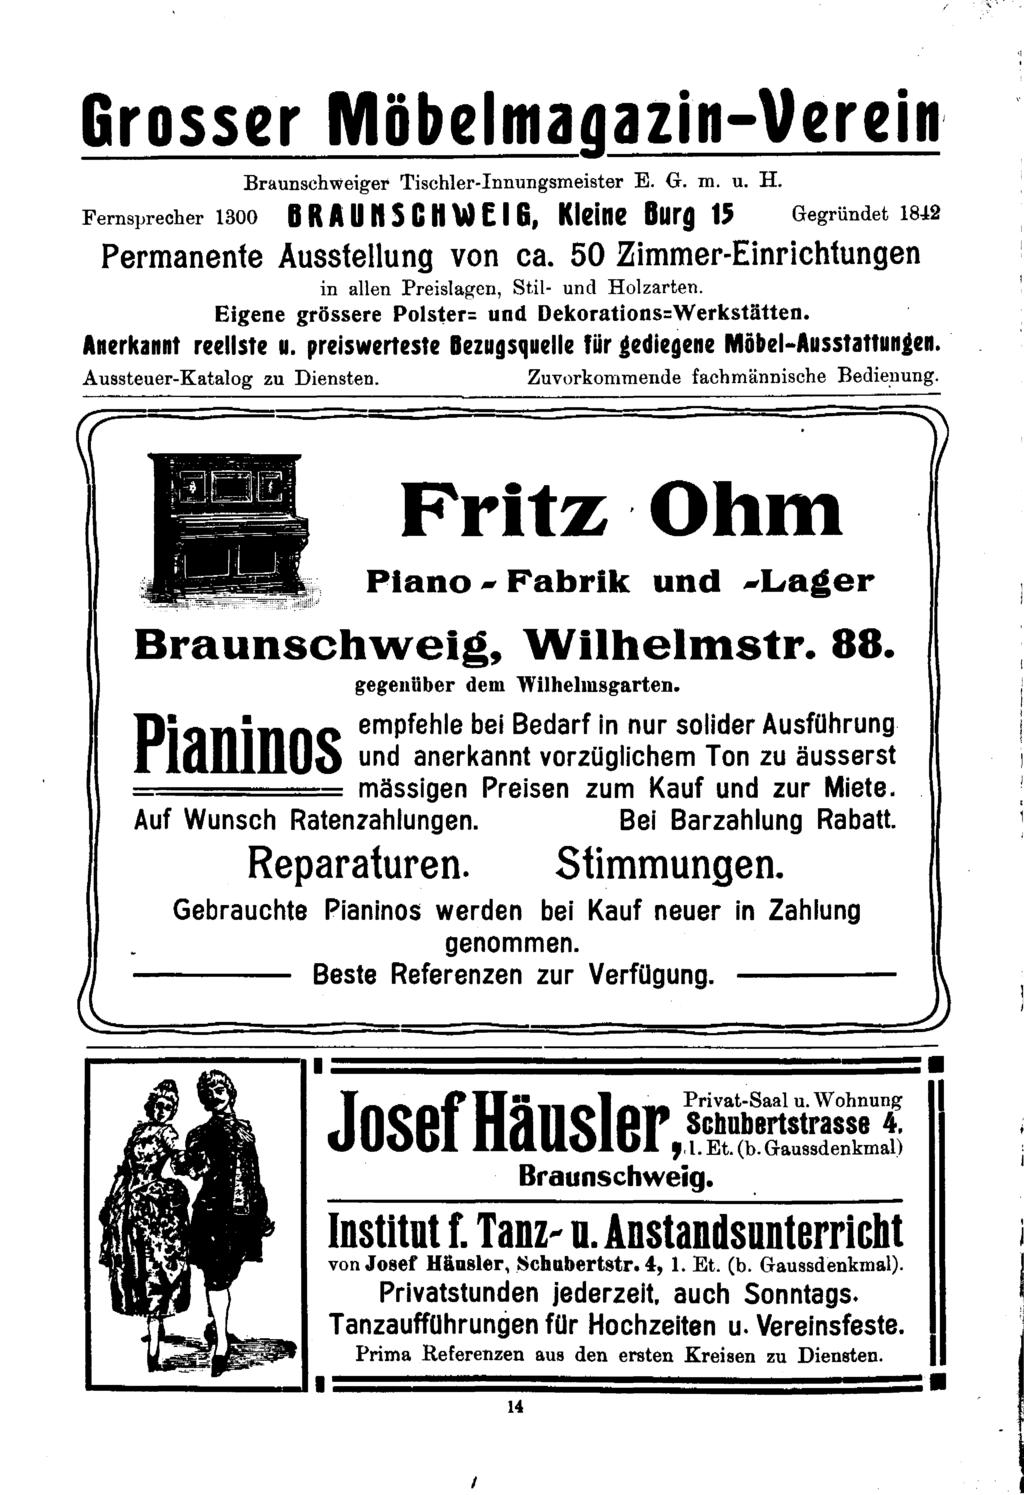 Grosser Möbelmagazin-Verein, Braunschweiger Tischlcr-nuungemeieter E. G. m. u. H. Fernsprecher 1300 BRAU nseil Wf &, Kleine Burg 15 Gegründet 1842 Permanente Ausstellung von ca.